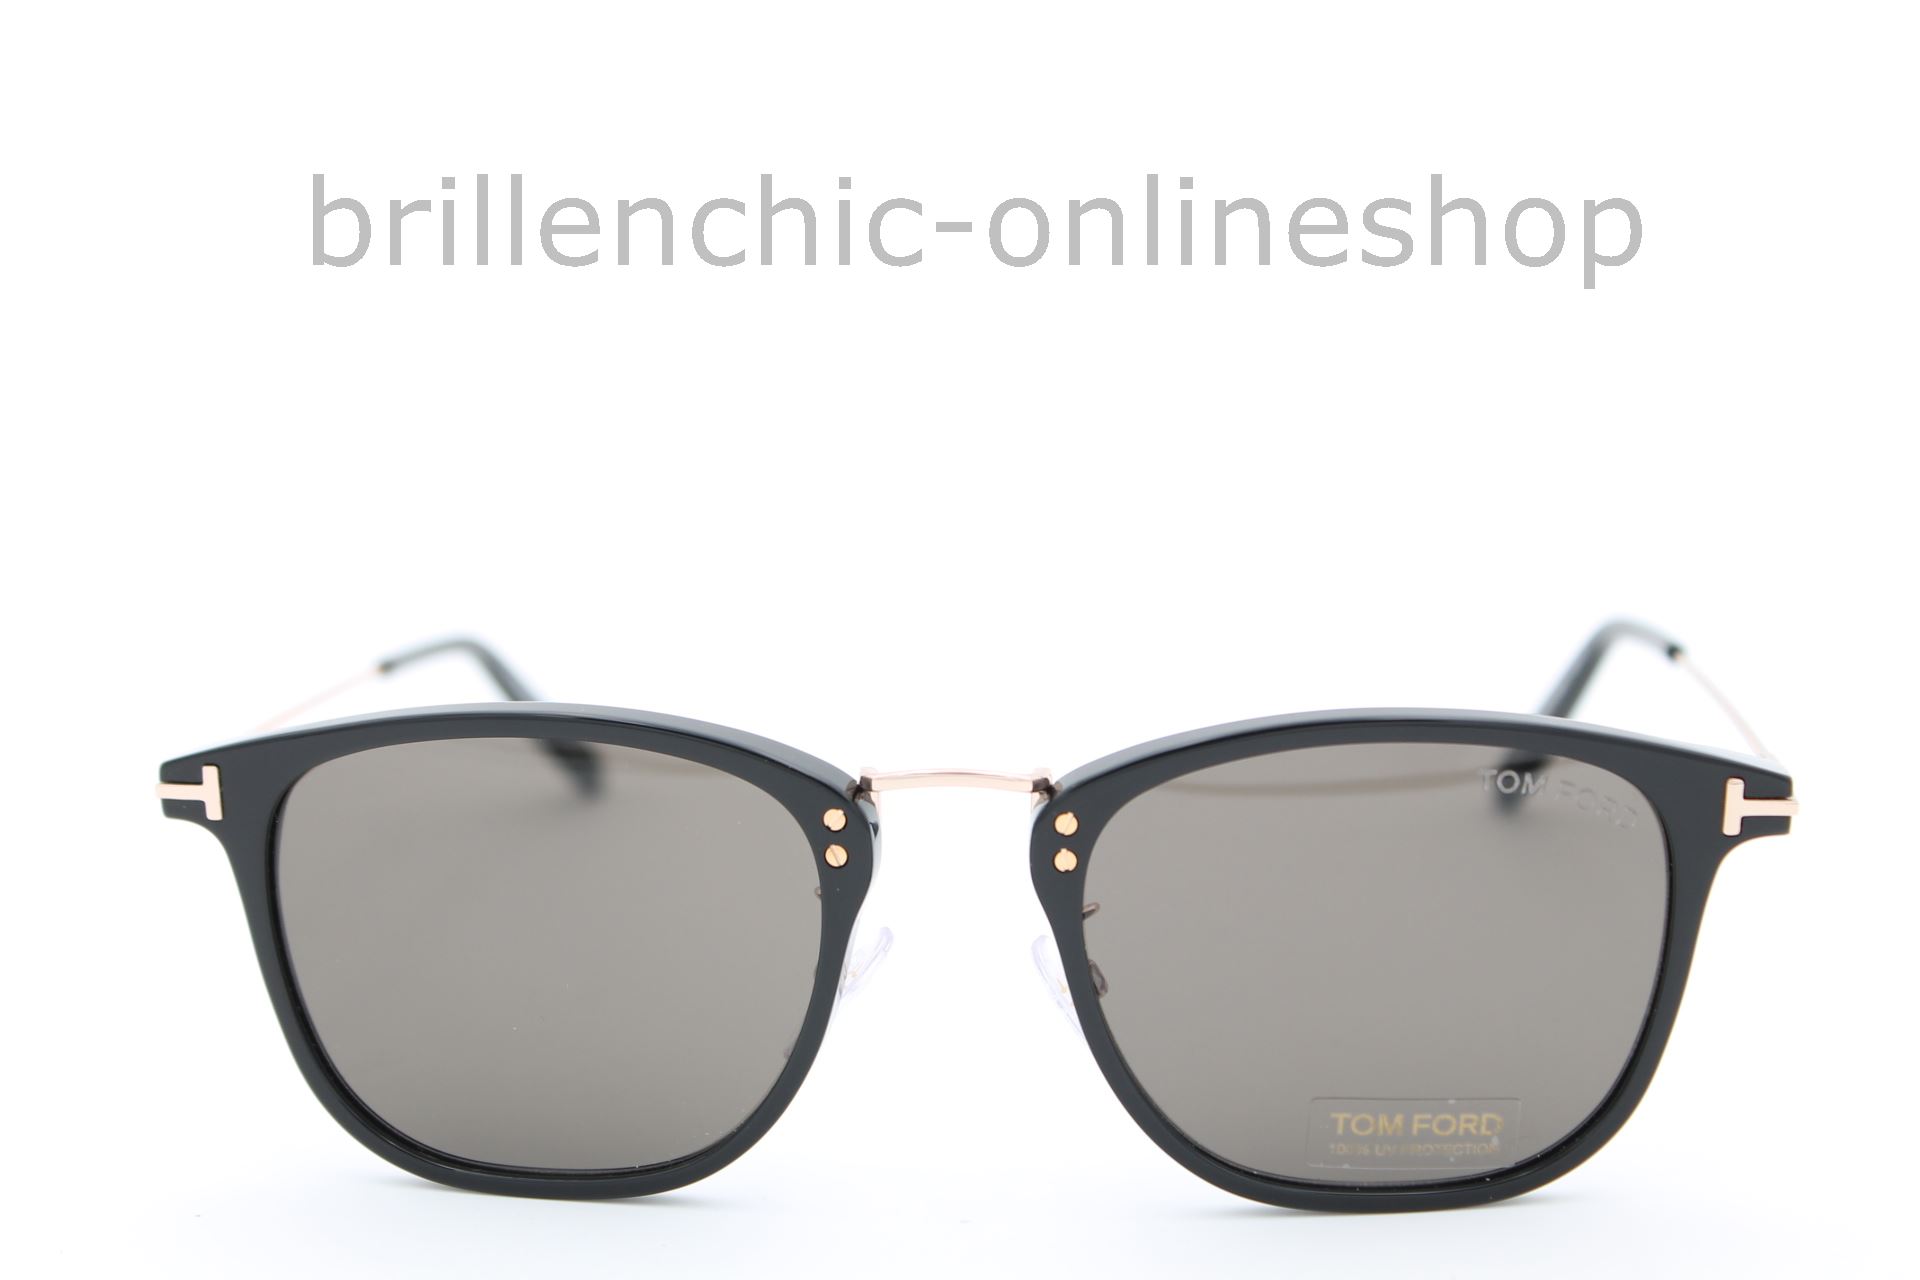 Brillenchic - onlineshop Berlin Ihr starker Partner für exklusive Brillen  online kaufen/TOM FORD TF 672 01A BEAU exklusiv im Brillenchic-Onlineshop